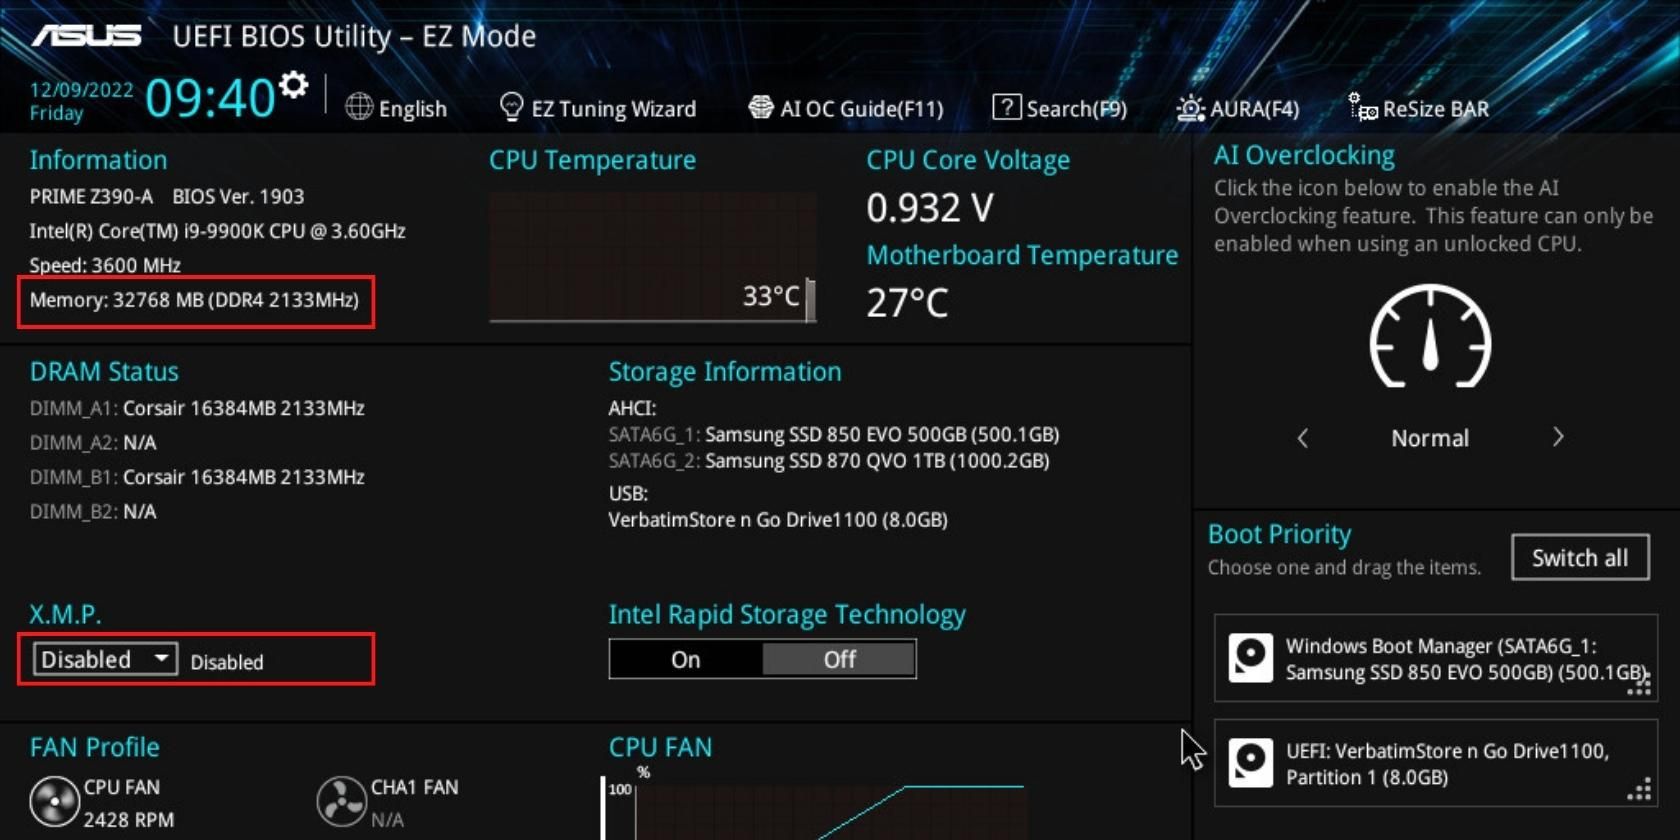 BIOS de ASUS que muestra la velocidad de RAM con XMP deshabilitado